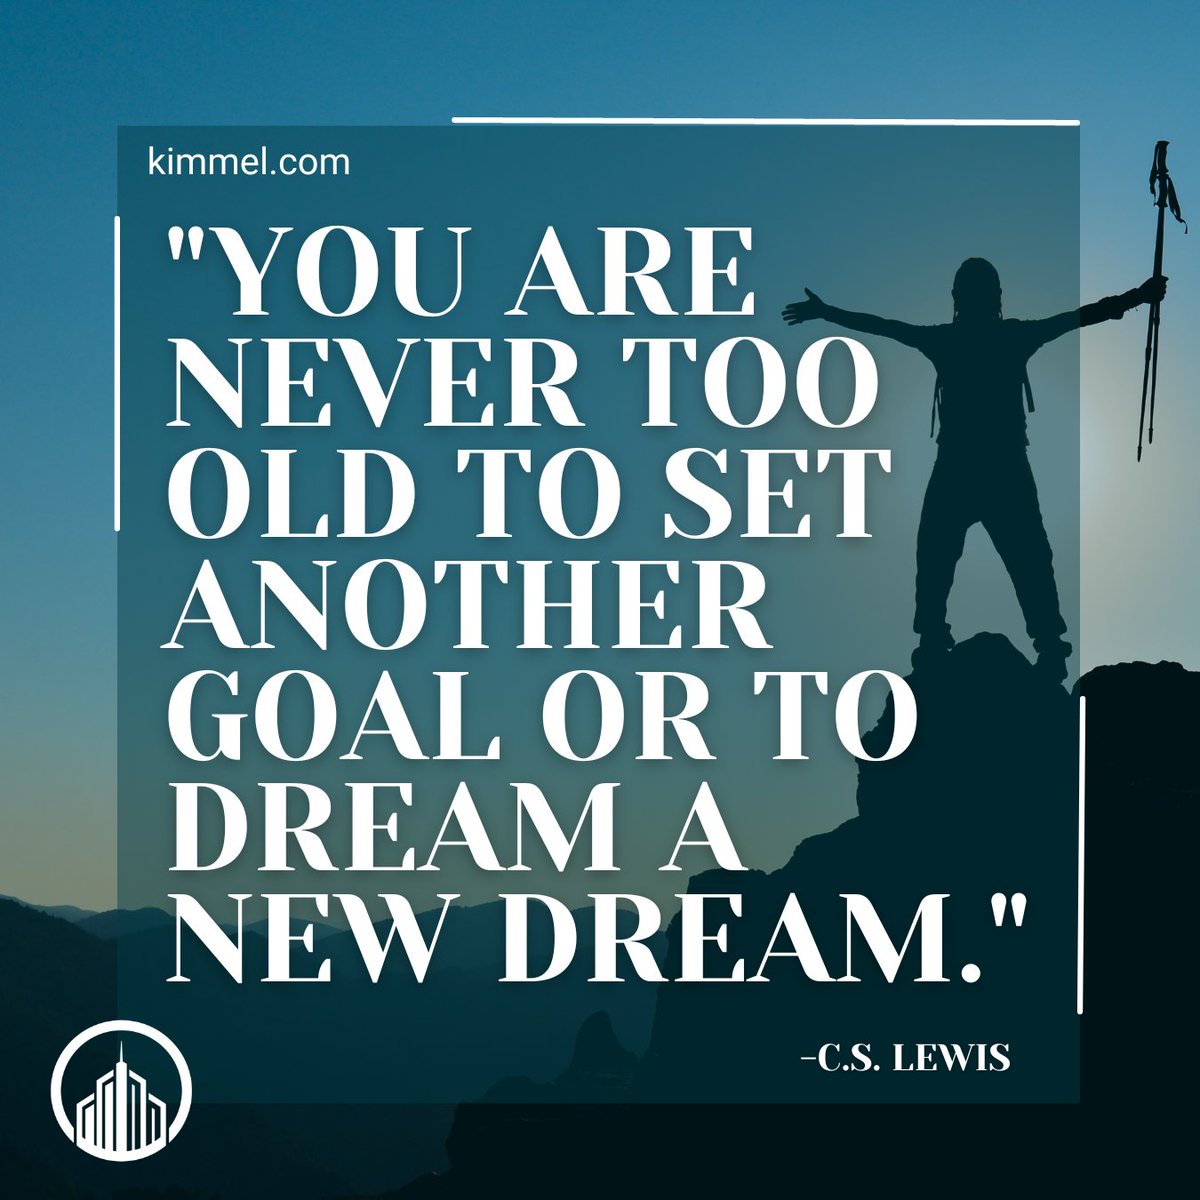 #MondayMotivation

kimmel.com

#success #quote #motivation #encourage #motivationalquote #goals #dreams #newgoal #newdream #cslewis